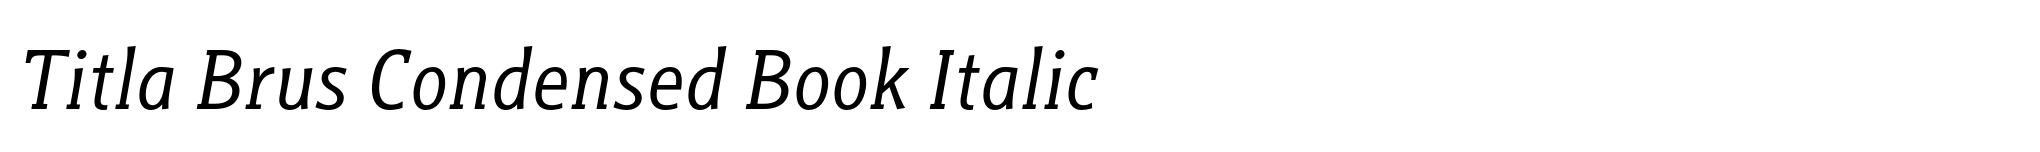 Titla Brus Condensed Book Italic image